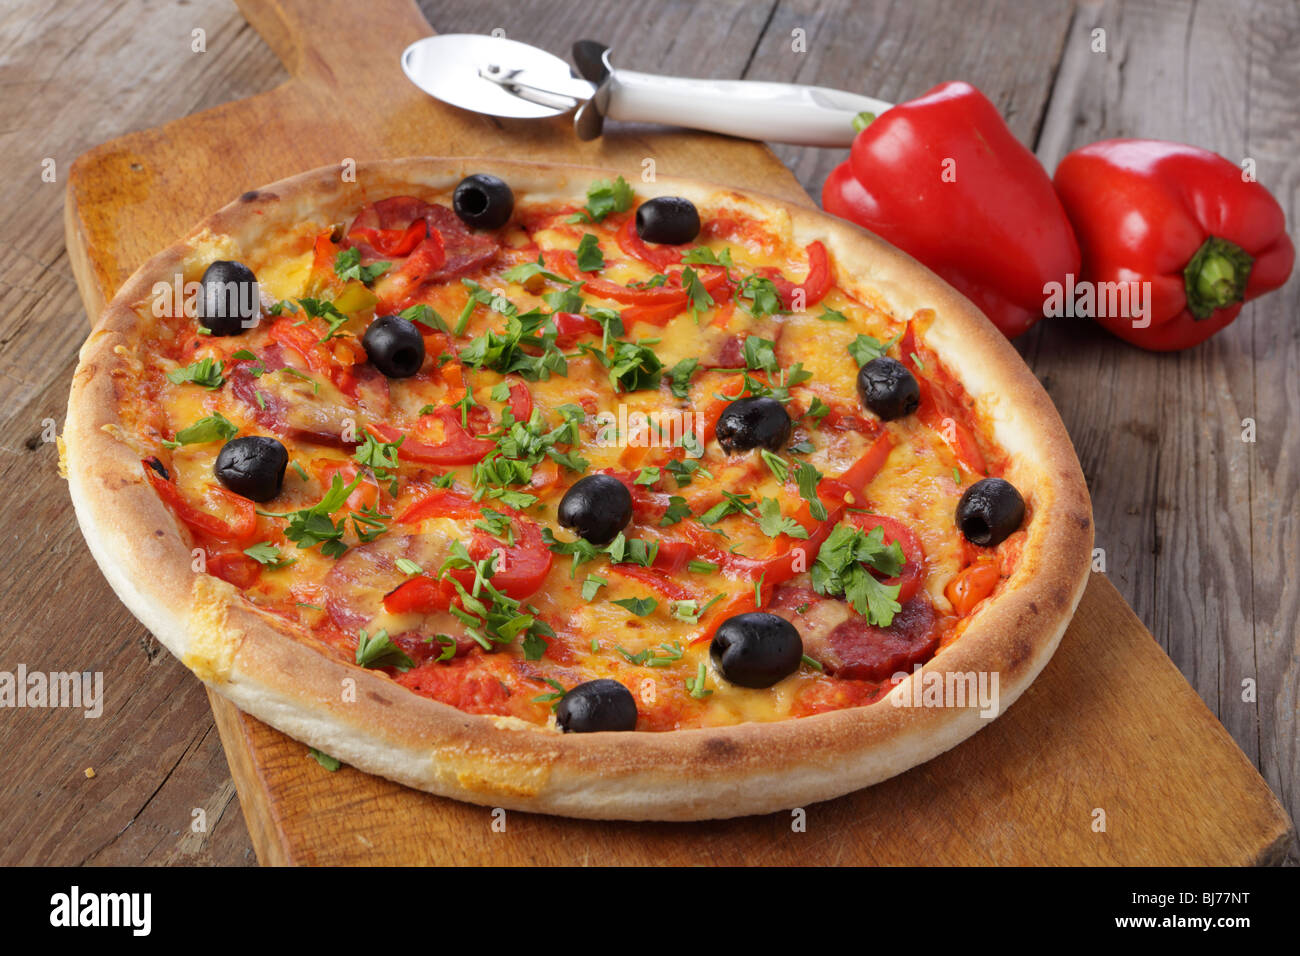 La pizza sur une table en bois Banque D'Images